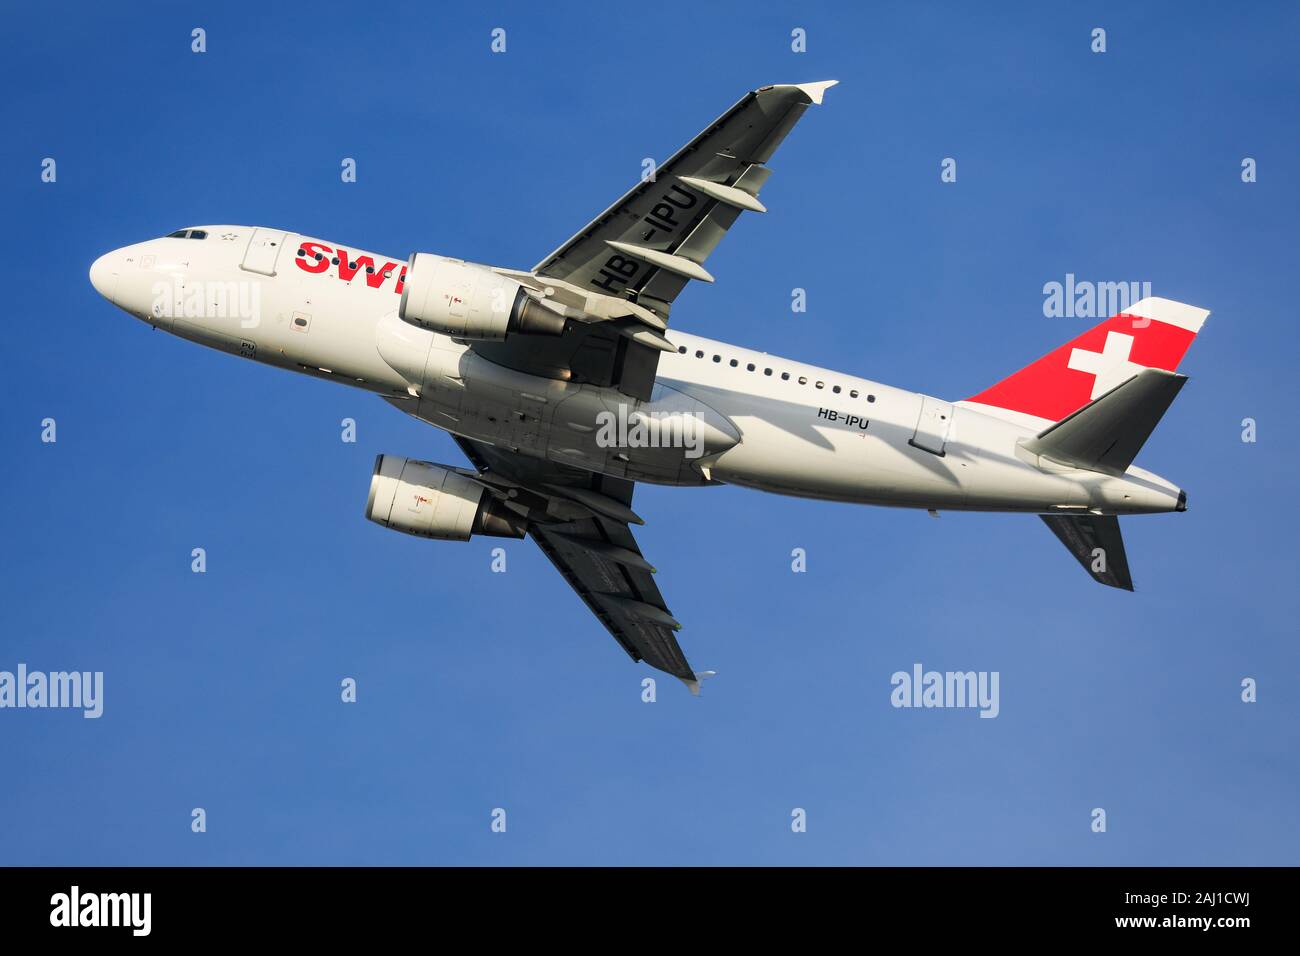 Enregistrement de l'Airbus A319 Suisse HB-UIP en vol le 29 décembre 2019 à l'aéroport Heathrow de Londres, Middlesex, Royaume-Uni Banque D'Images